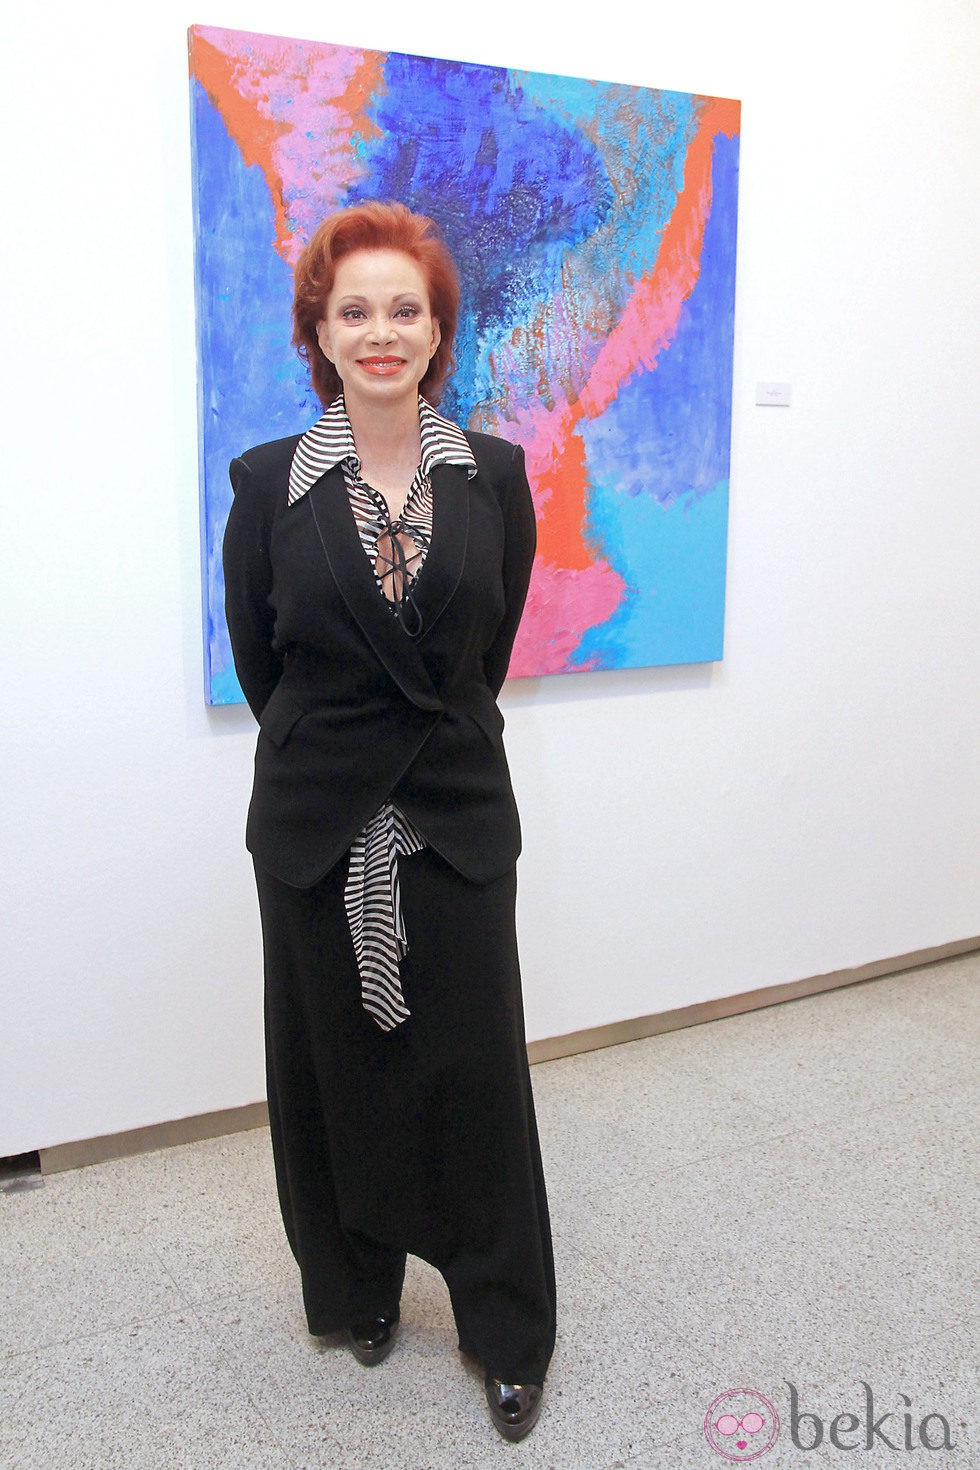 Paloma San Basilio en la presentación de su exposición de pintura